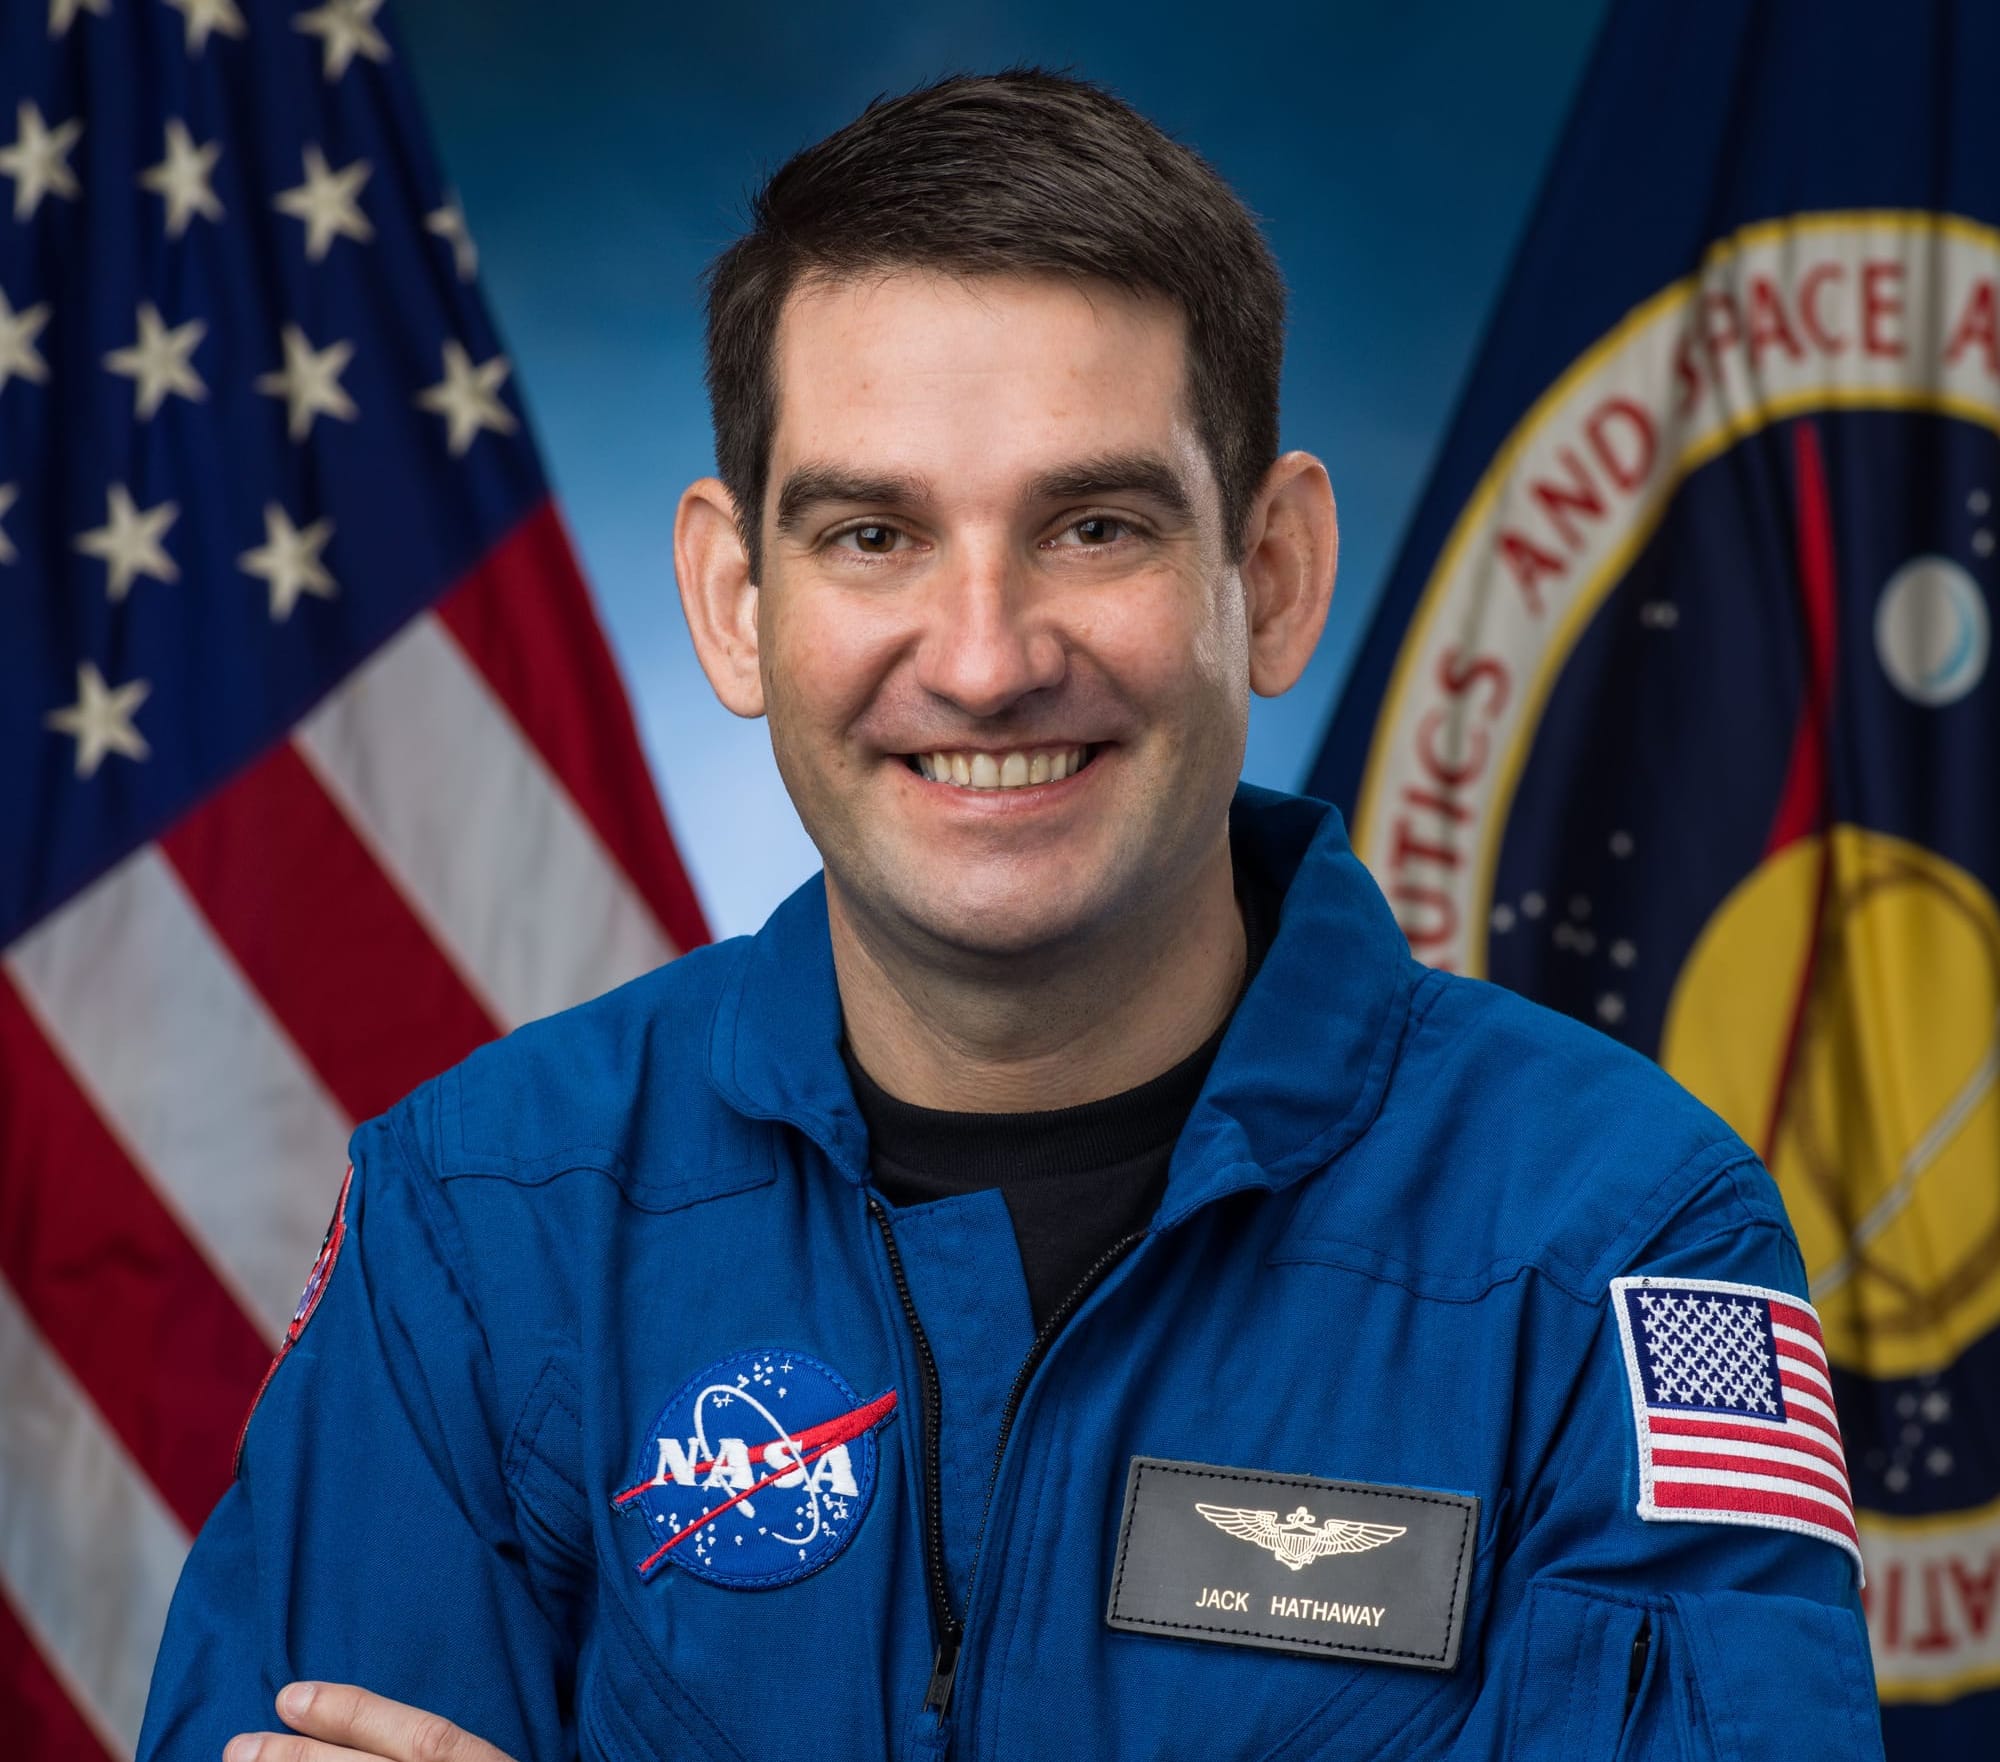 Jack Hathaway's NASA portrait. ©NASA